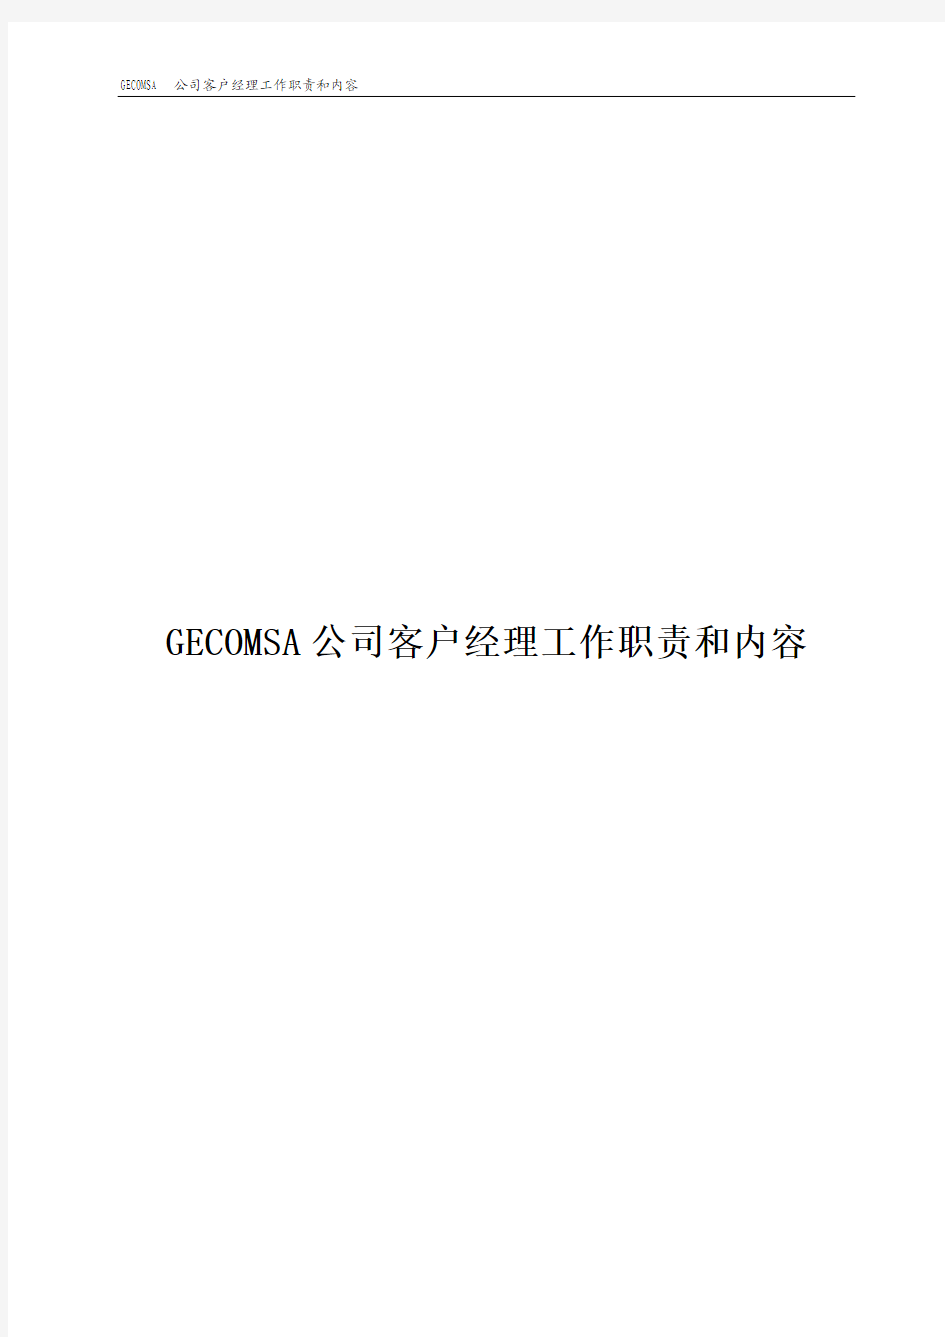 GECOMSA公司客户经理工作职责和内容